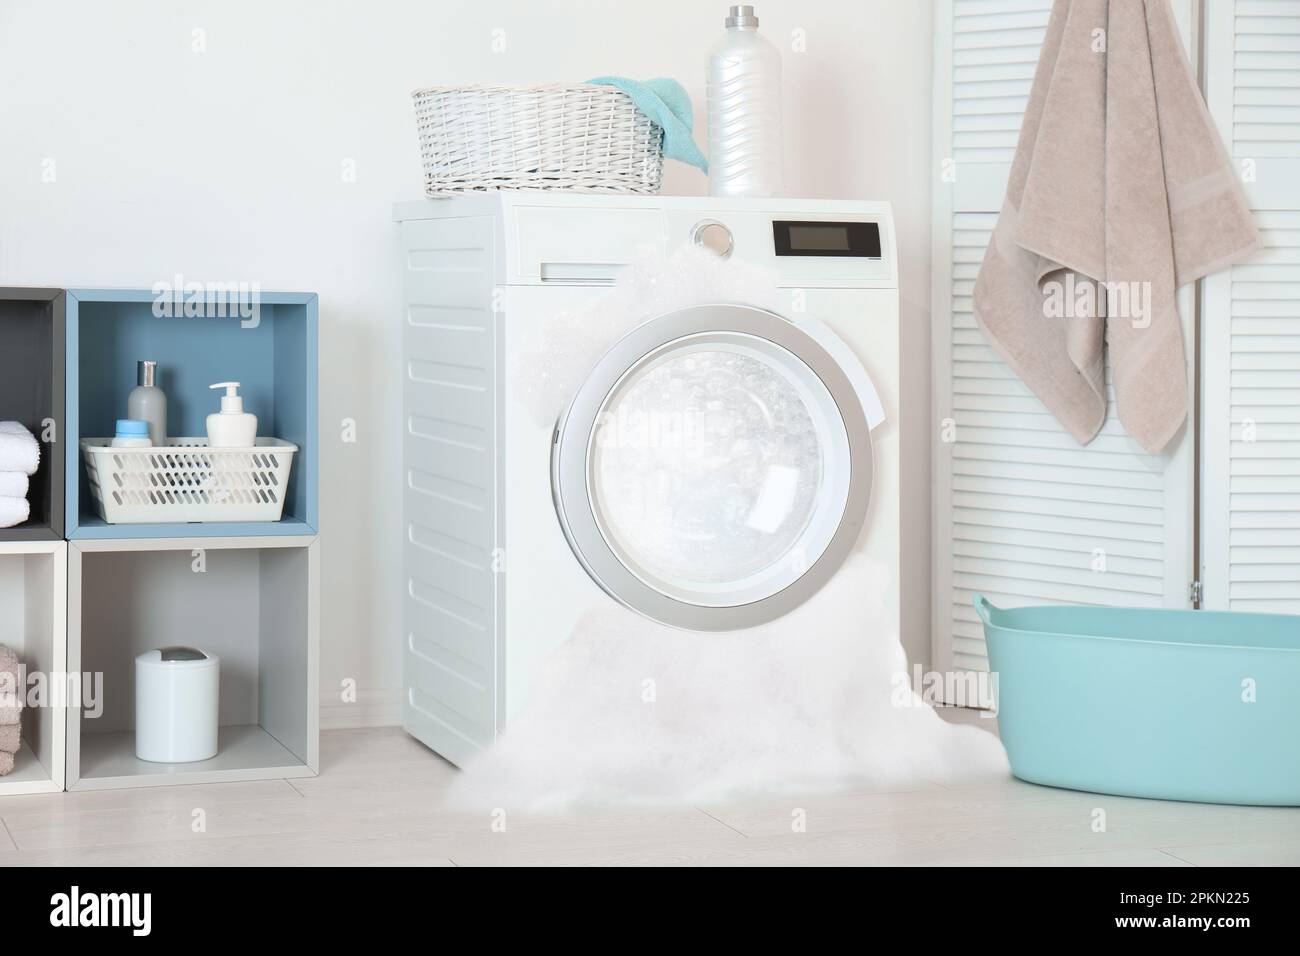 Beim Waschen im Zimmer tritt Schaum aus der defekten Waschmaschine aus  Stockfotografie - Alamy